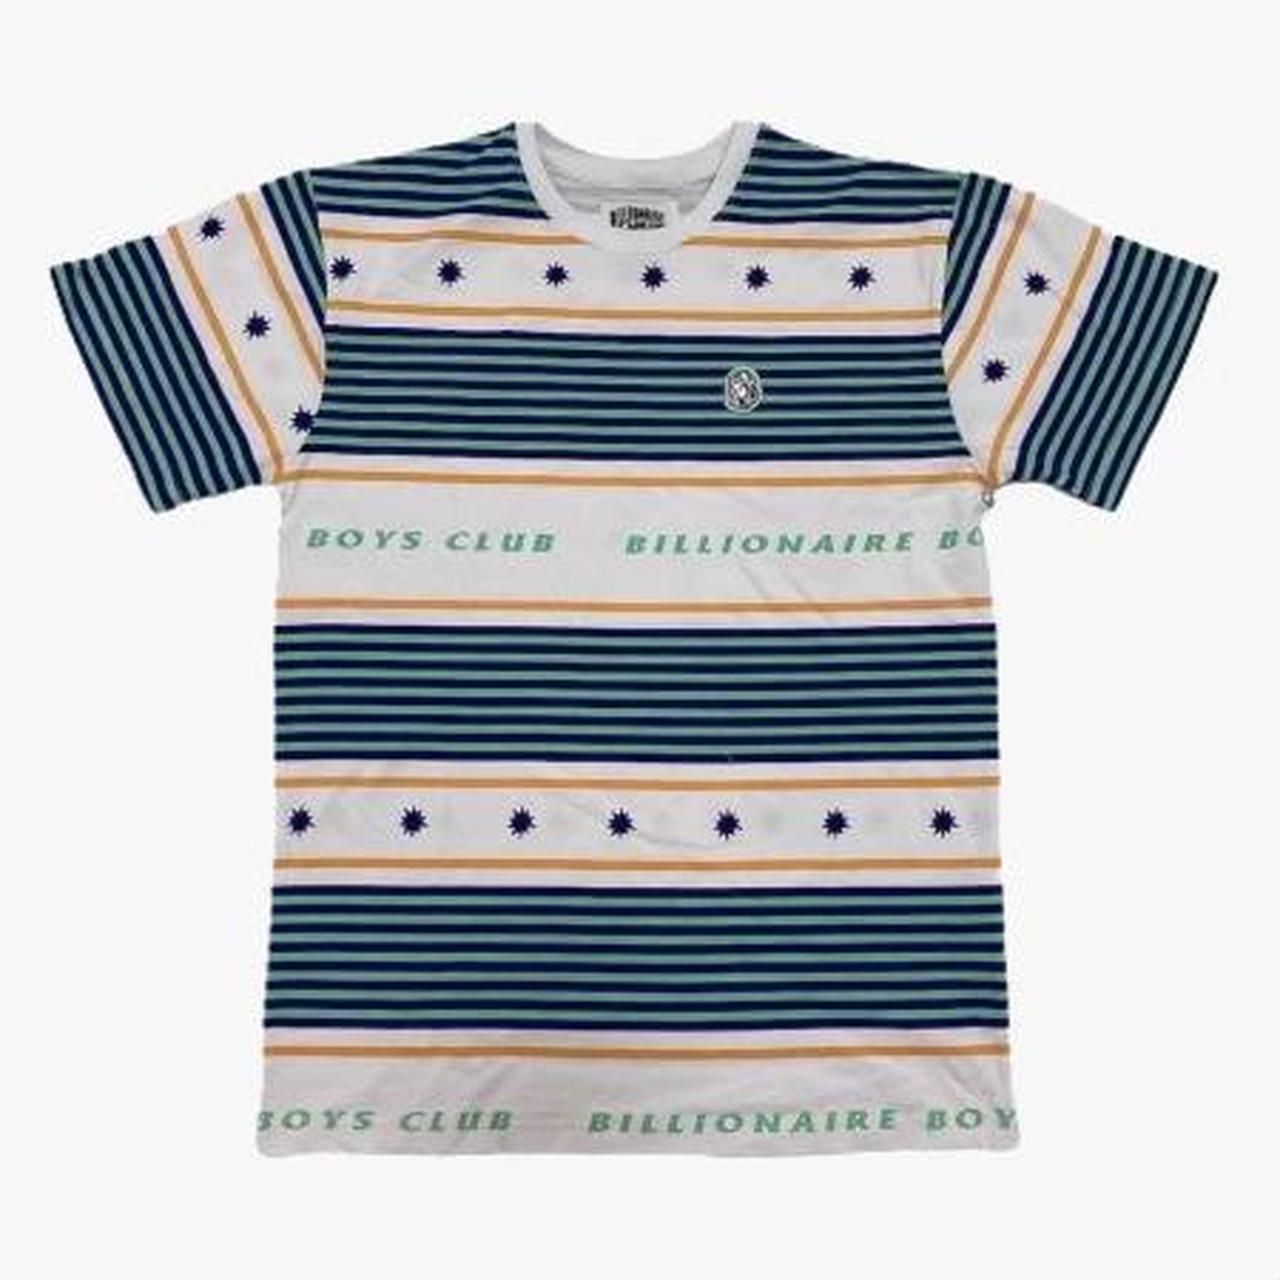 Billionaires Boys Club shirt Size small #y2k... - Depop